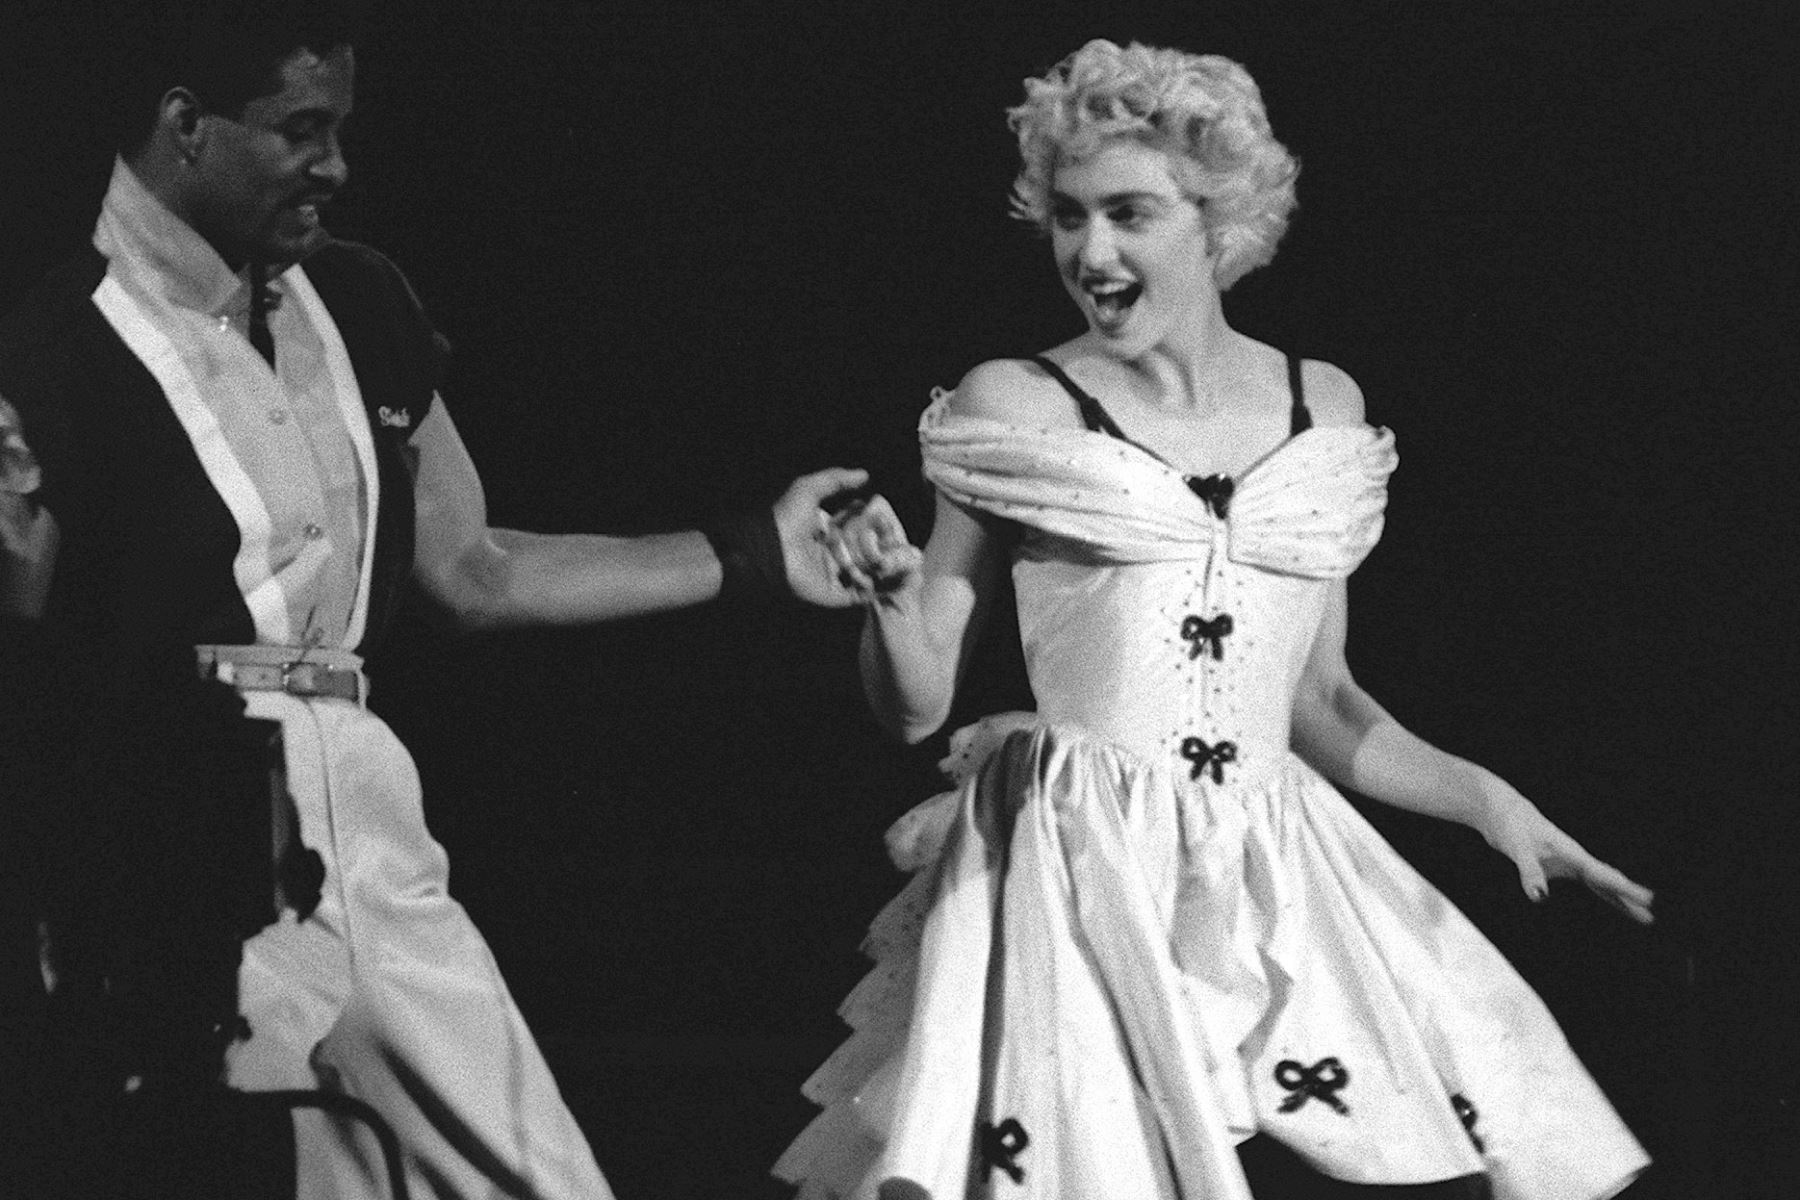 La estrella pop estadounidense Madonna actúa junto con un compañero de baile no identificado, el 28 de agosto de 1987, durante un único concierto que tuvo lugar en el parque de la ciudad de Sceaux, ubicado en el suburbio sureño de París. AFP